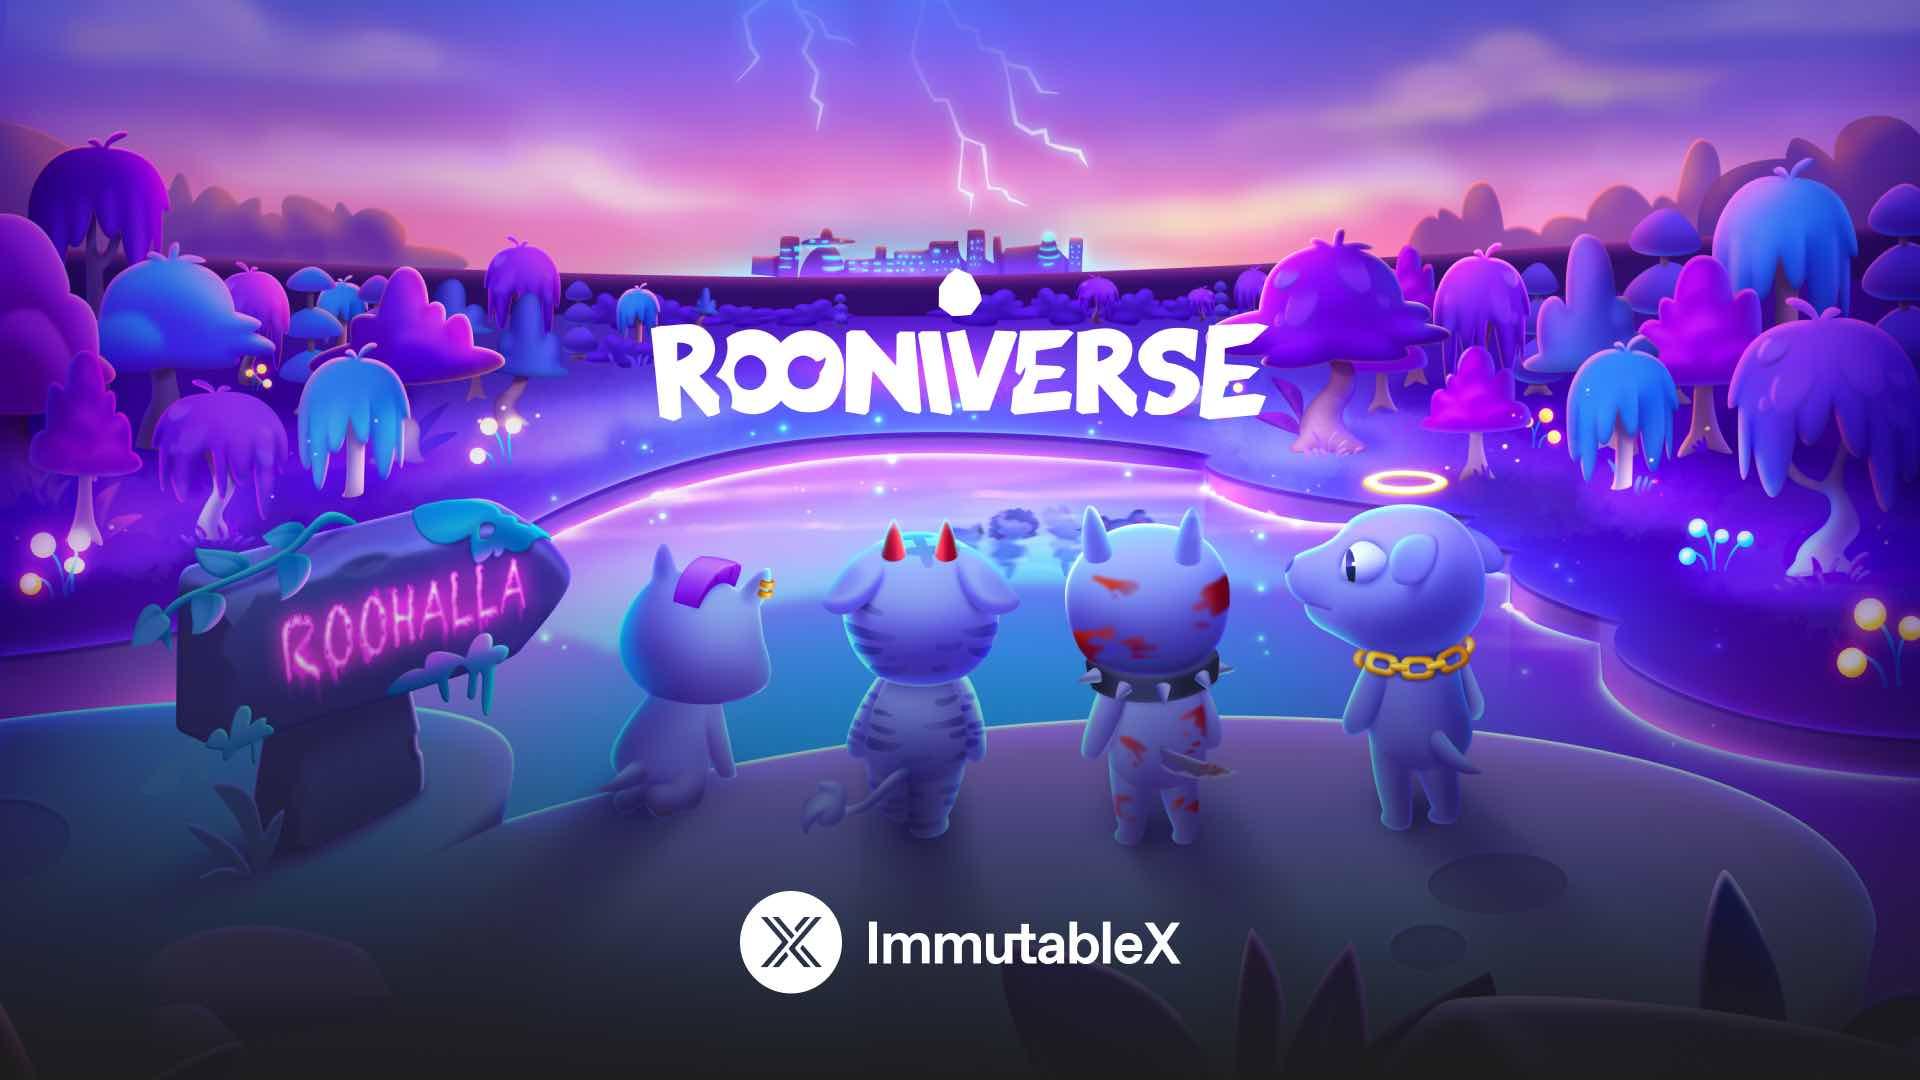 Çok oyunculu bir mobil oyun olan Rooniverse, oyuncuların kabile savaşçılarıyla kazan-kazan maceralarına girebilecekleri büyüleyici bir meta evren sunuyor